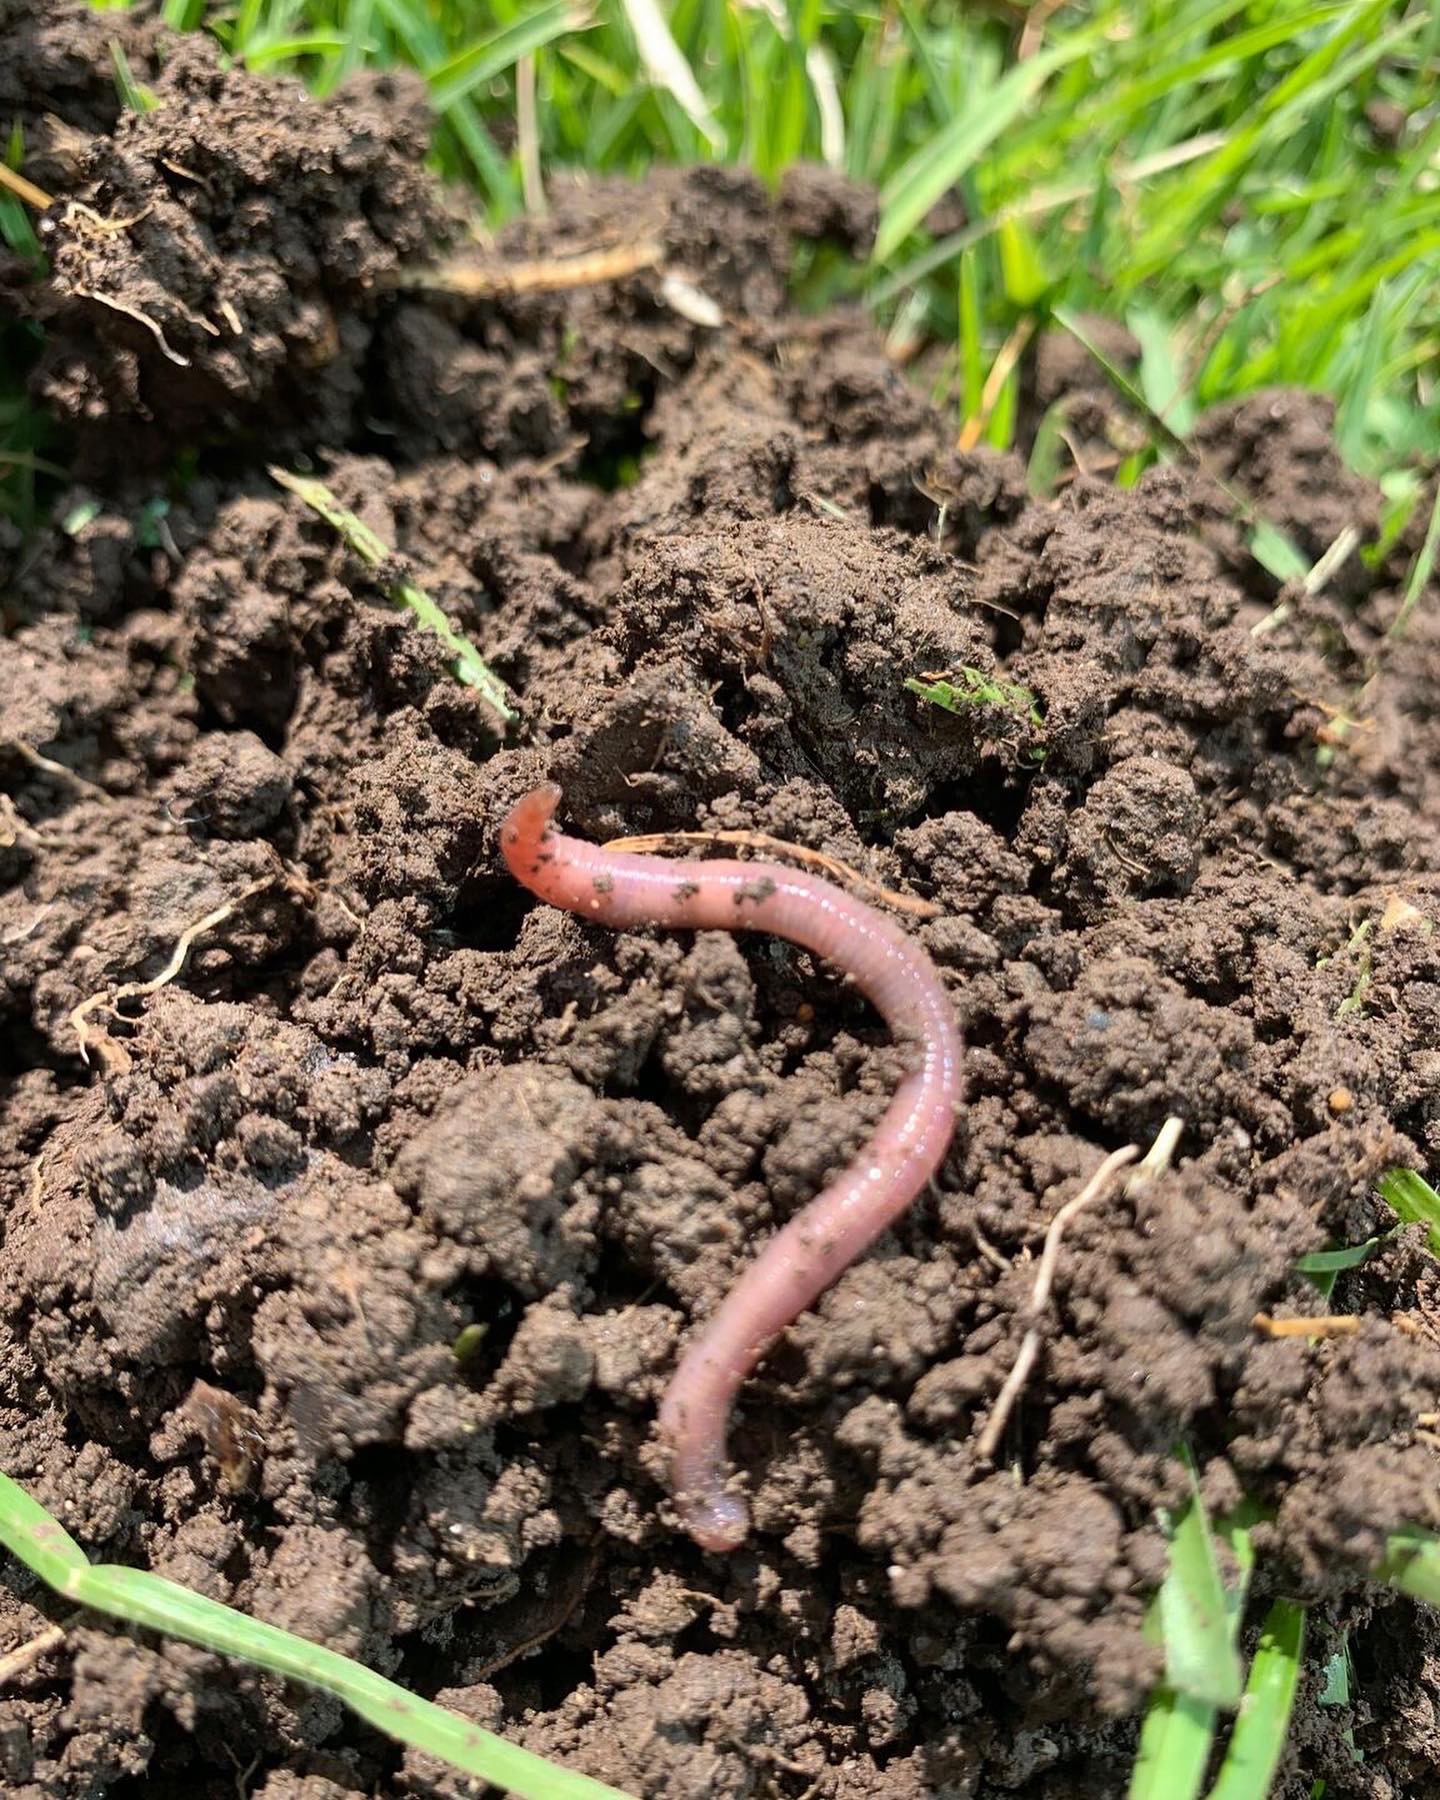 Worm in soil